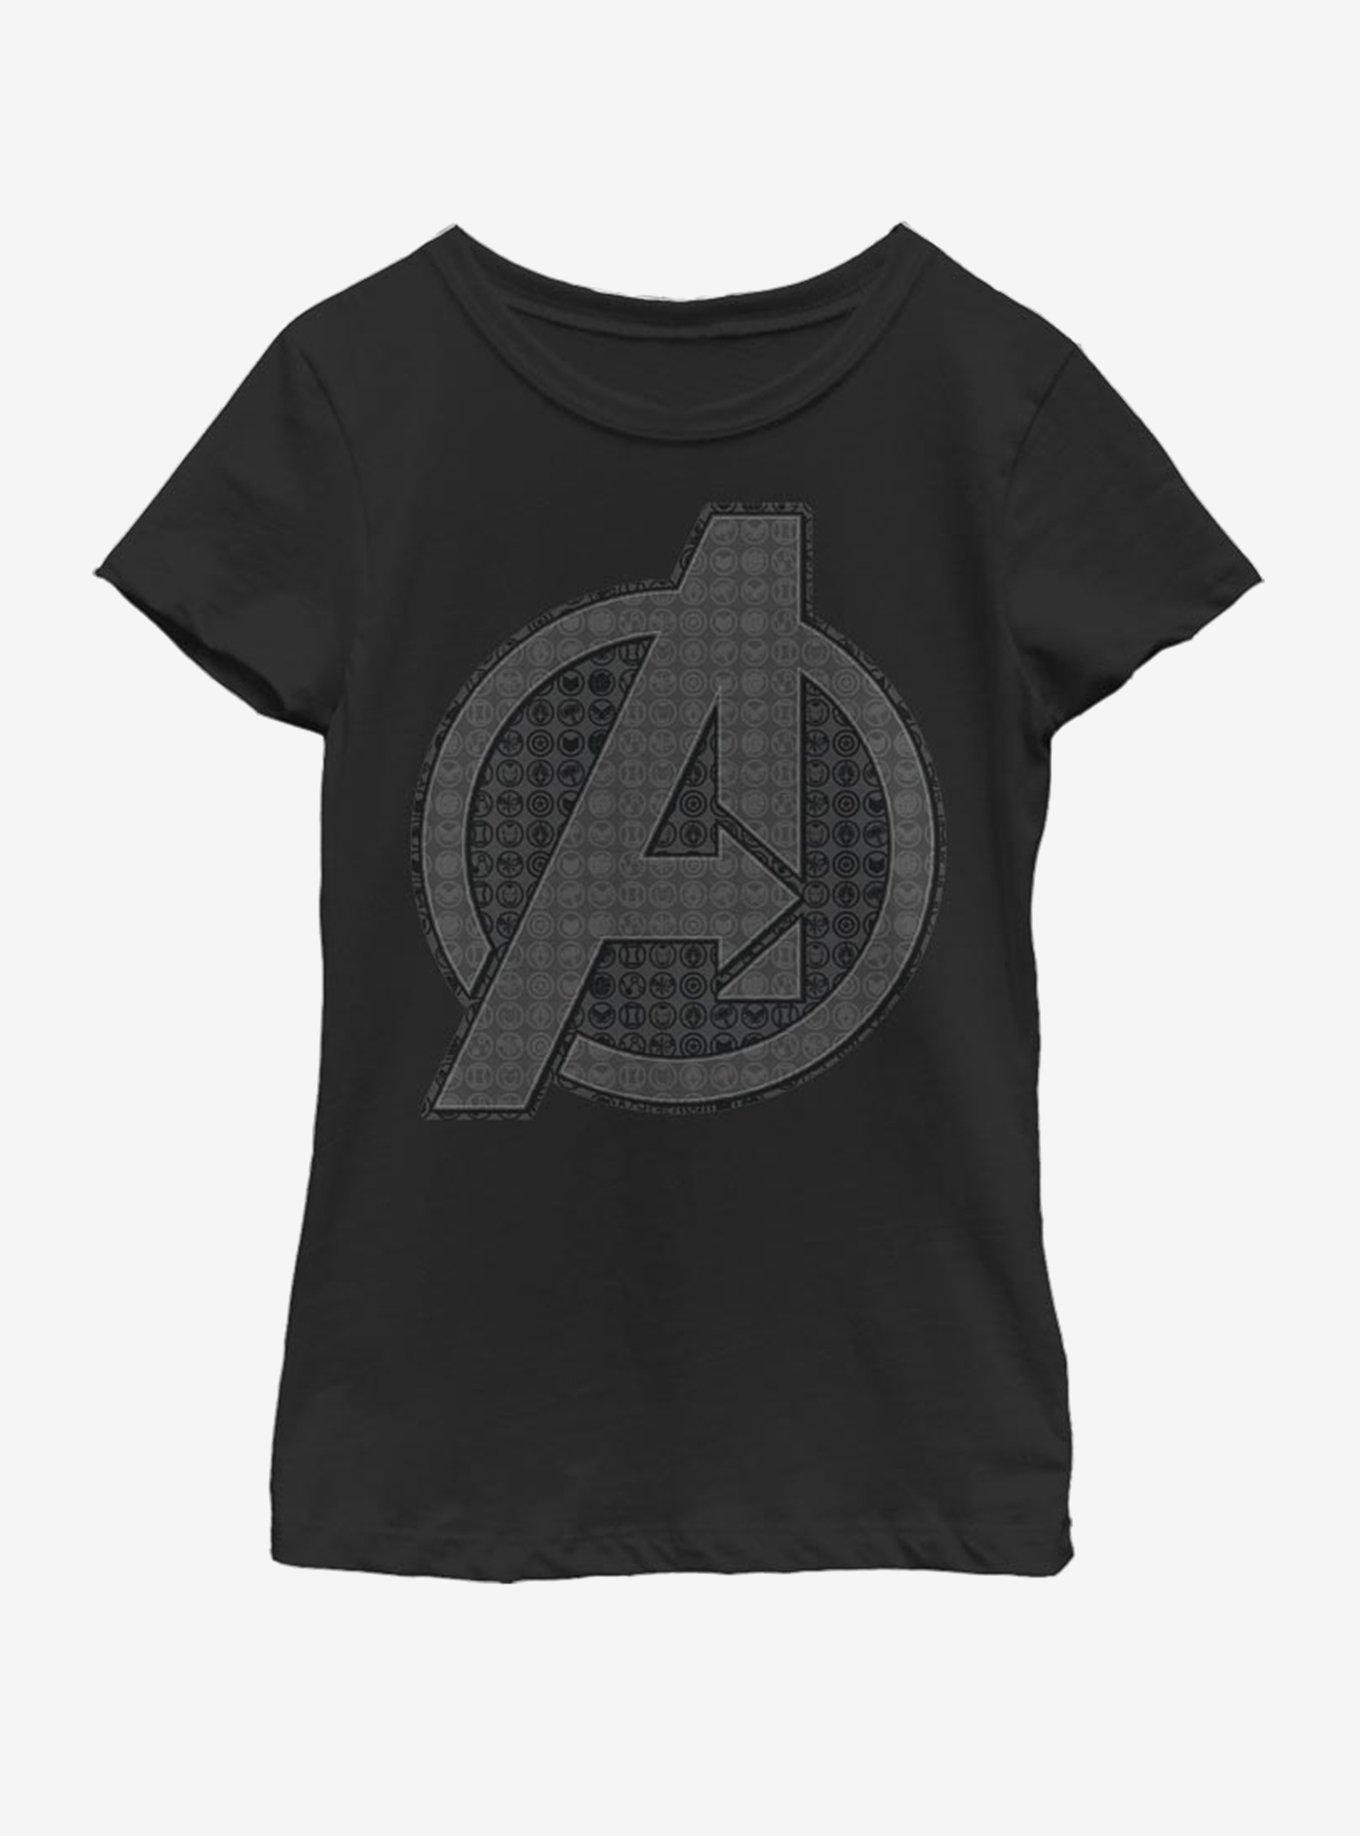 Marvel Avengers: Endgame Endgame Grayscale Logo Youth Girls T-Shirt ...